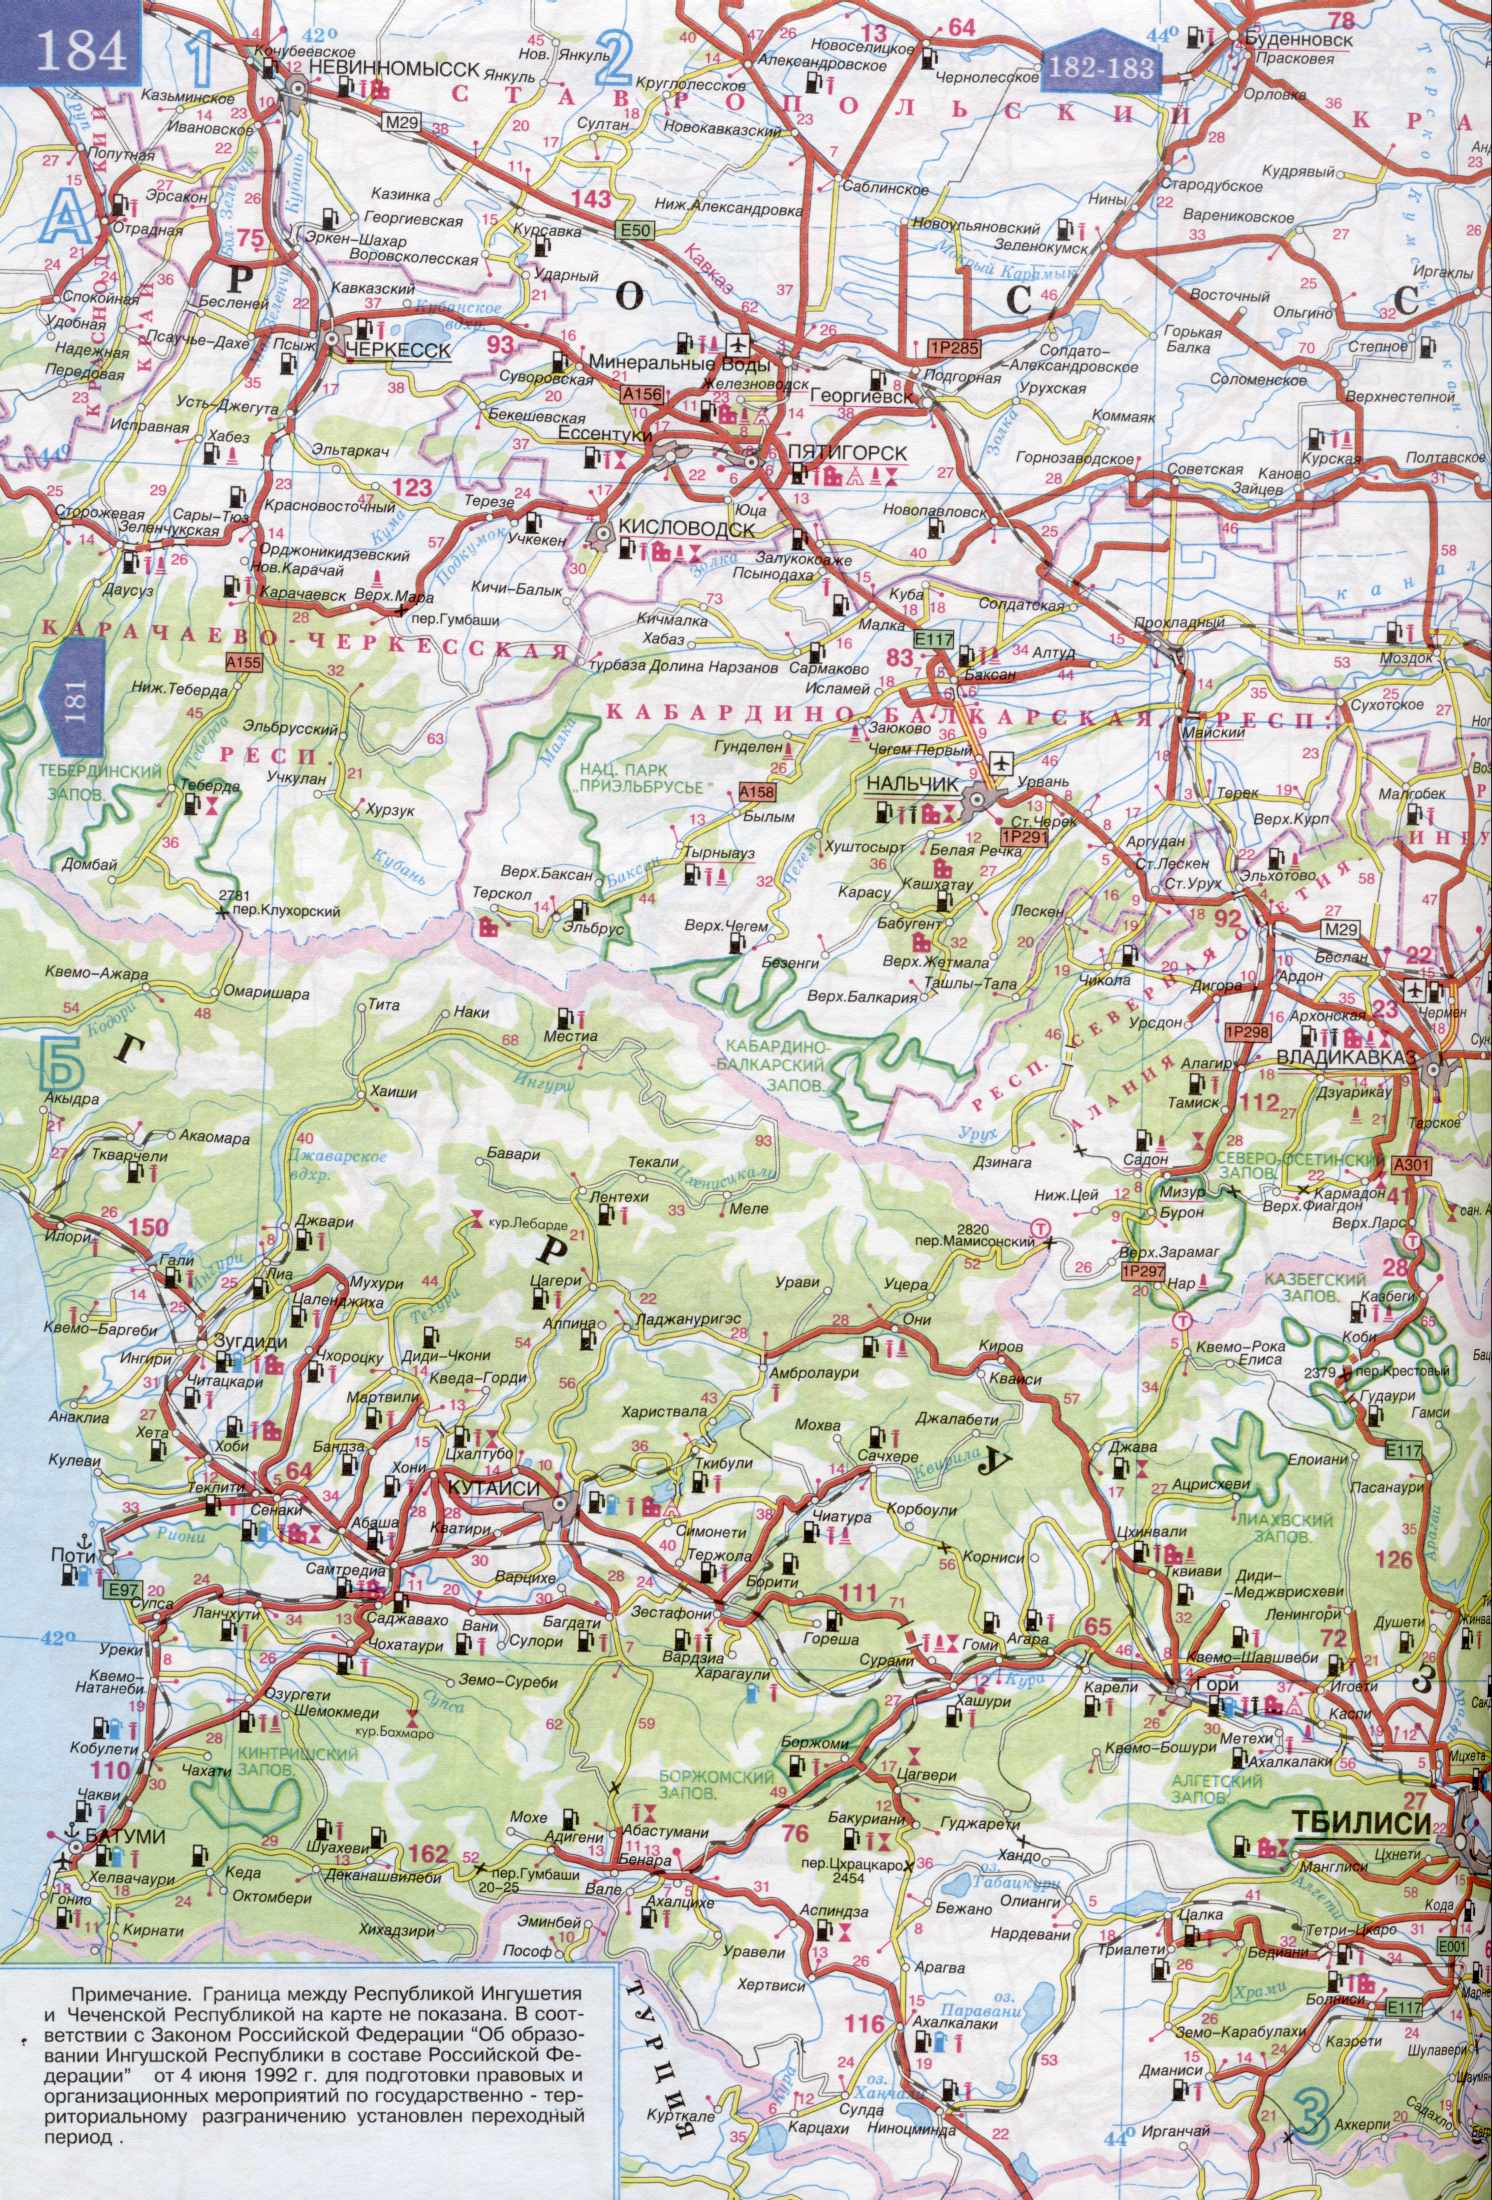 Карта Ставропольского края и Калмыкии. Карта автомобильных дорог - Ставропольский край, Дагестан, Калмыкия. Скачать бесплатно подробную карту , A1 - 